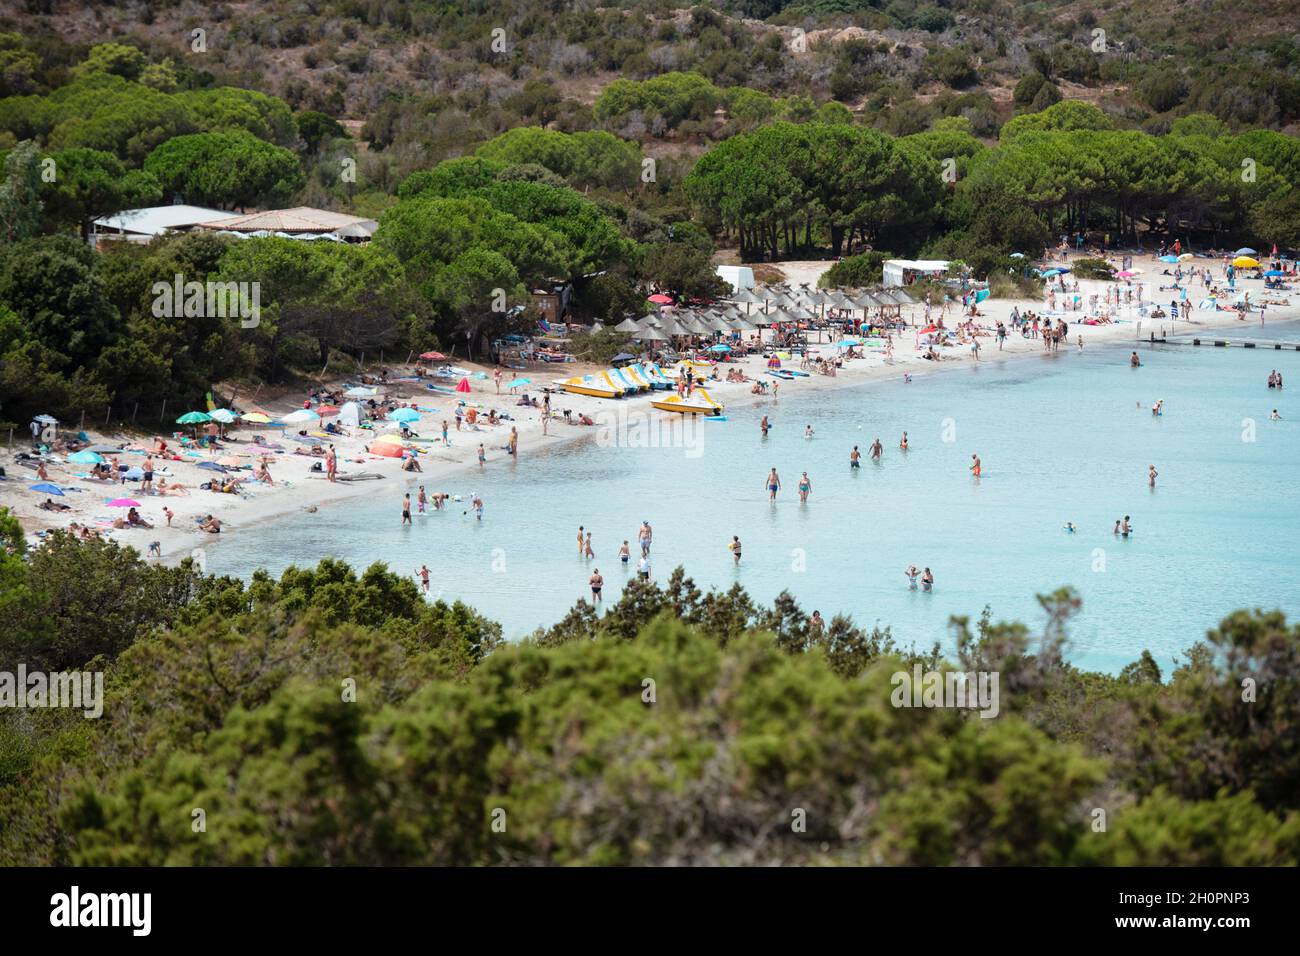 Corse: plage dans la baie de Santa Giulia avec des touristes et de l'eau translucide, en Corse du Sud Banque D'Images